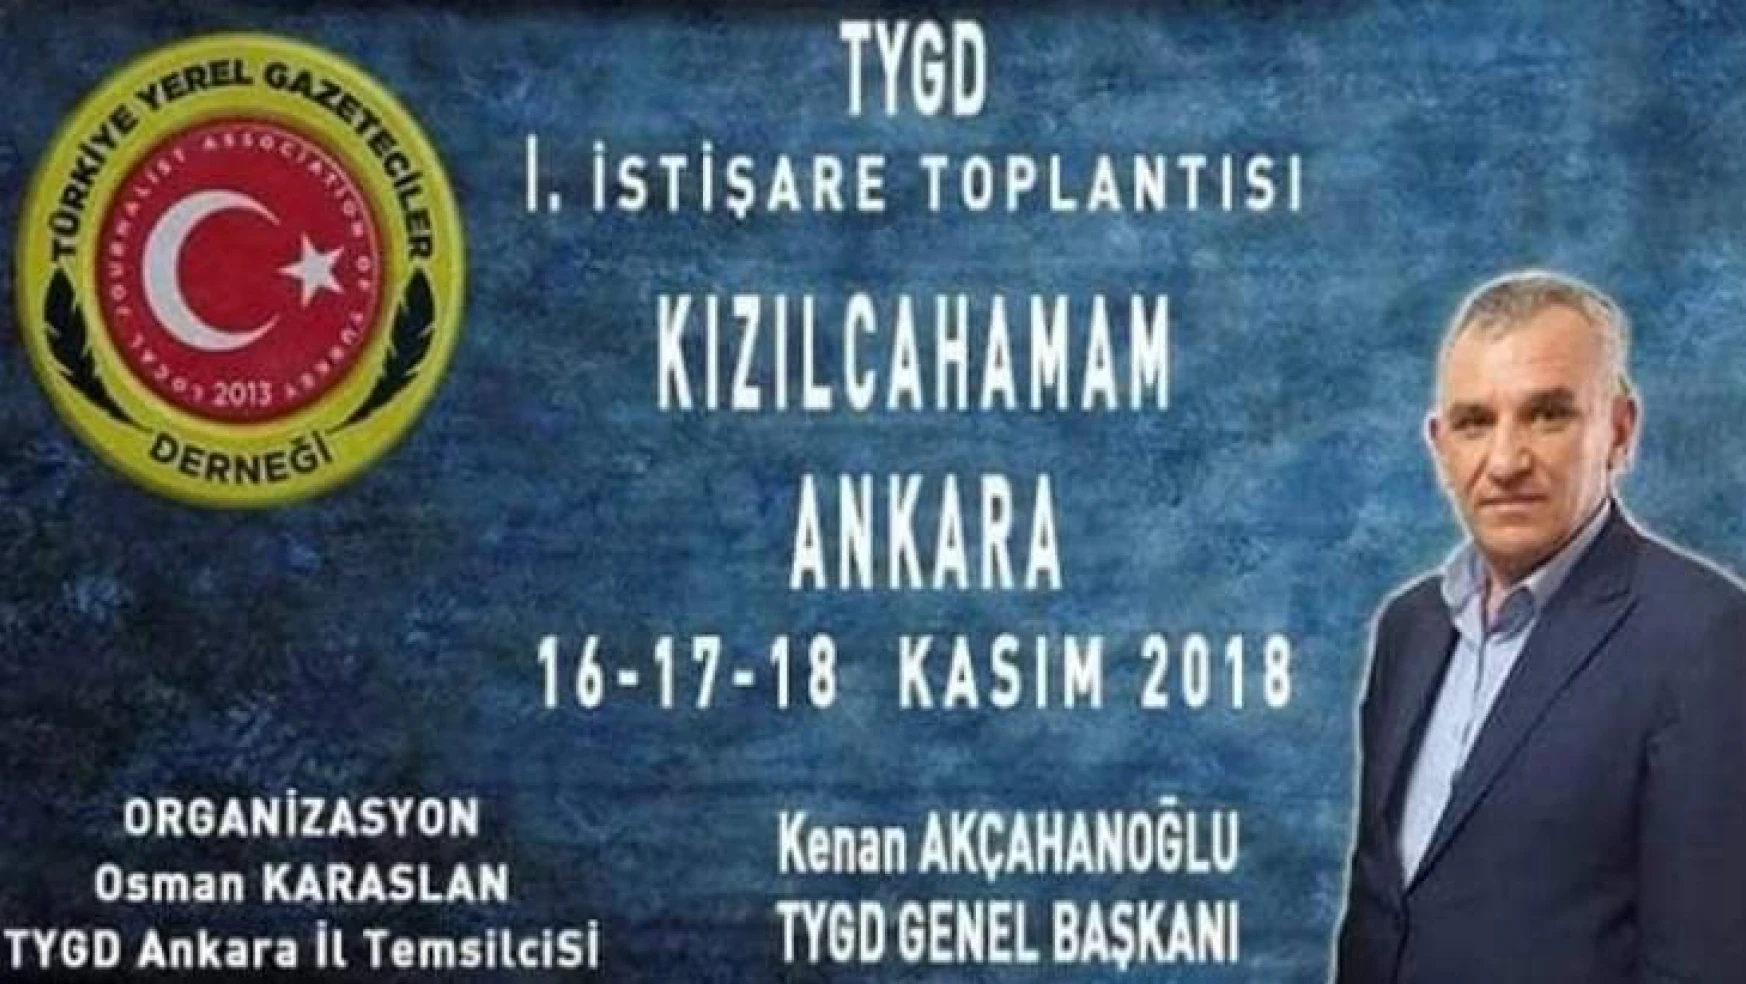 Türkiye Yerel Gazeteciler Derneği, Ankara-Kızılcahamam'da Toplanıyor